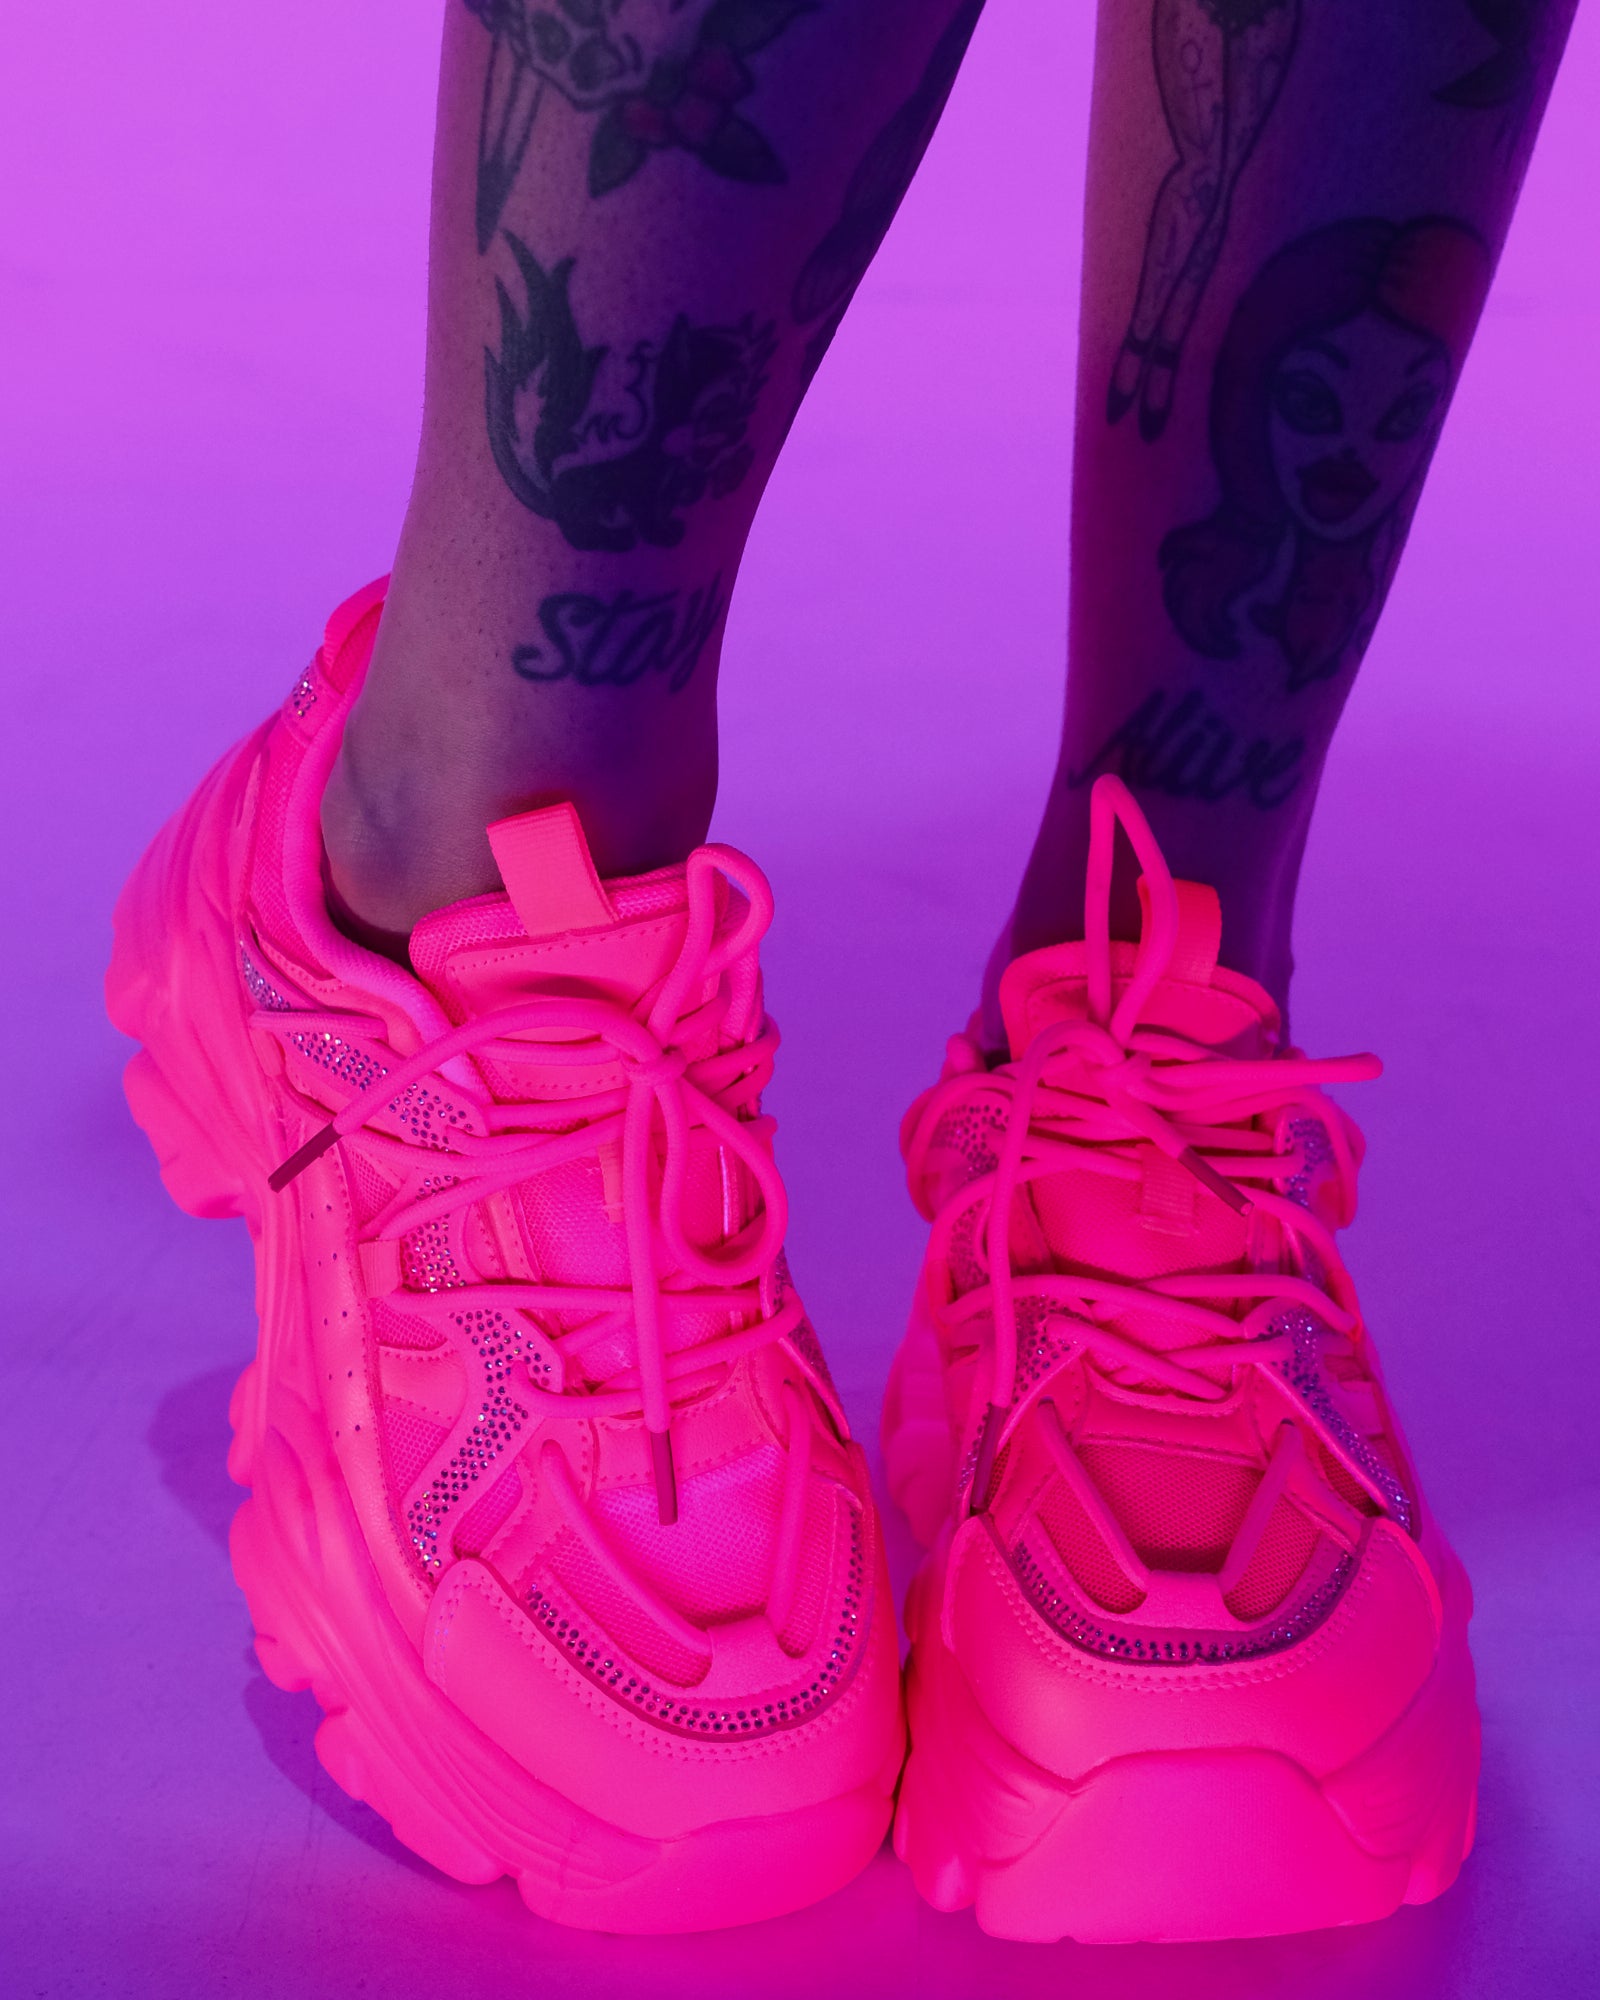 JENN ARDOR Slip-on Sneakers for Women Hot Pink India | Ubuy